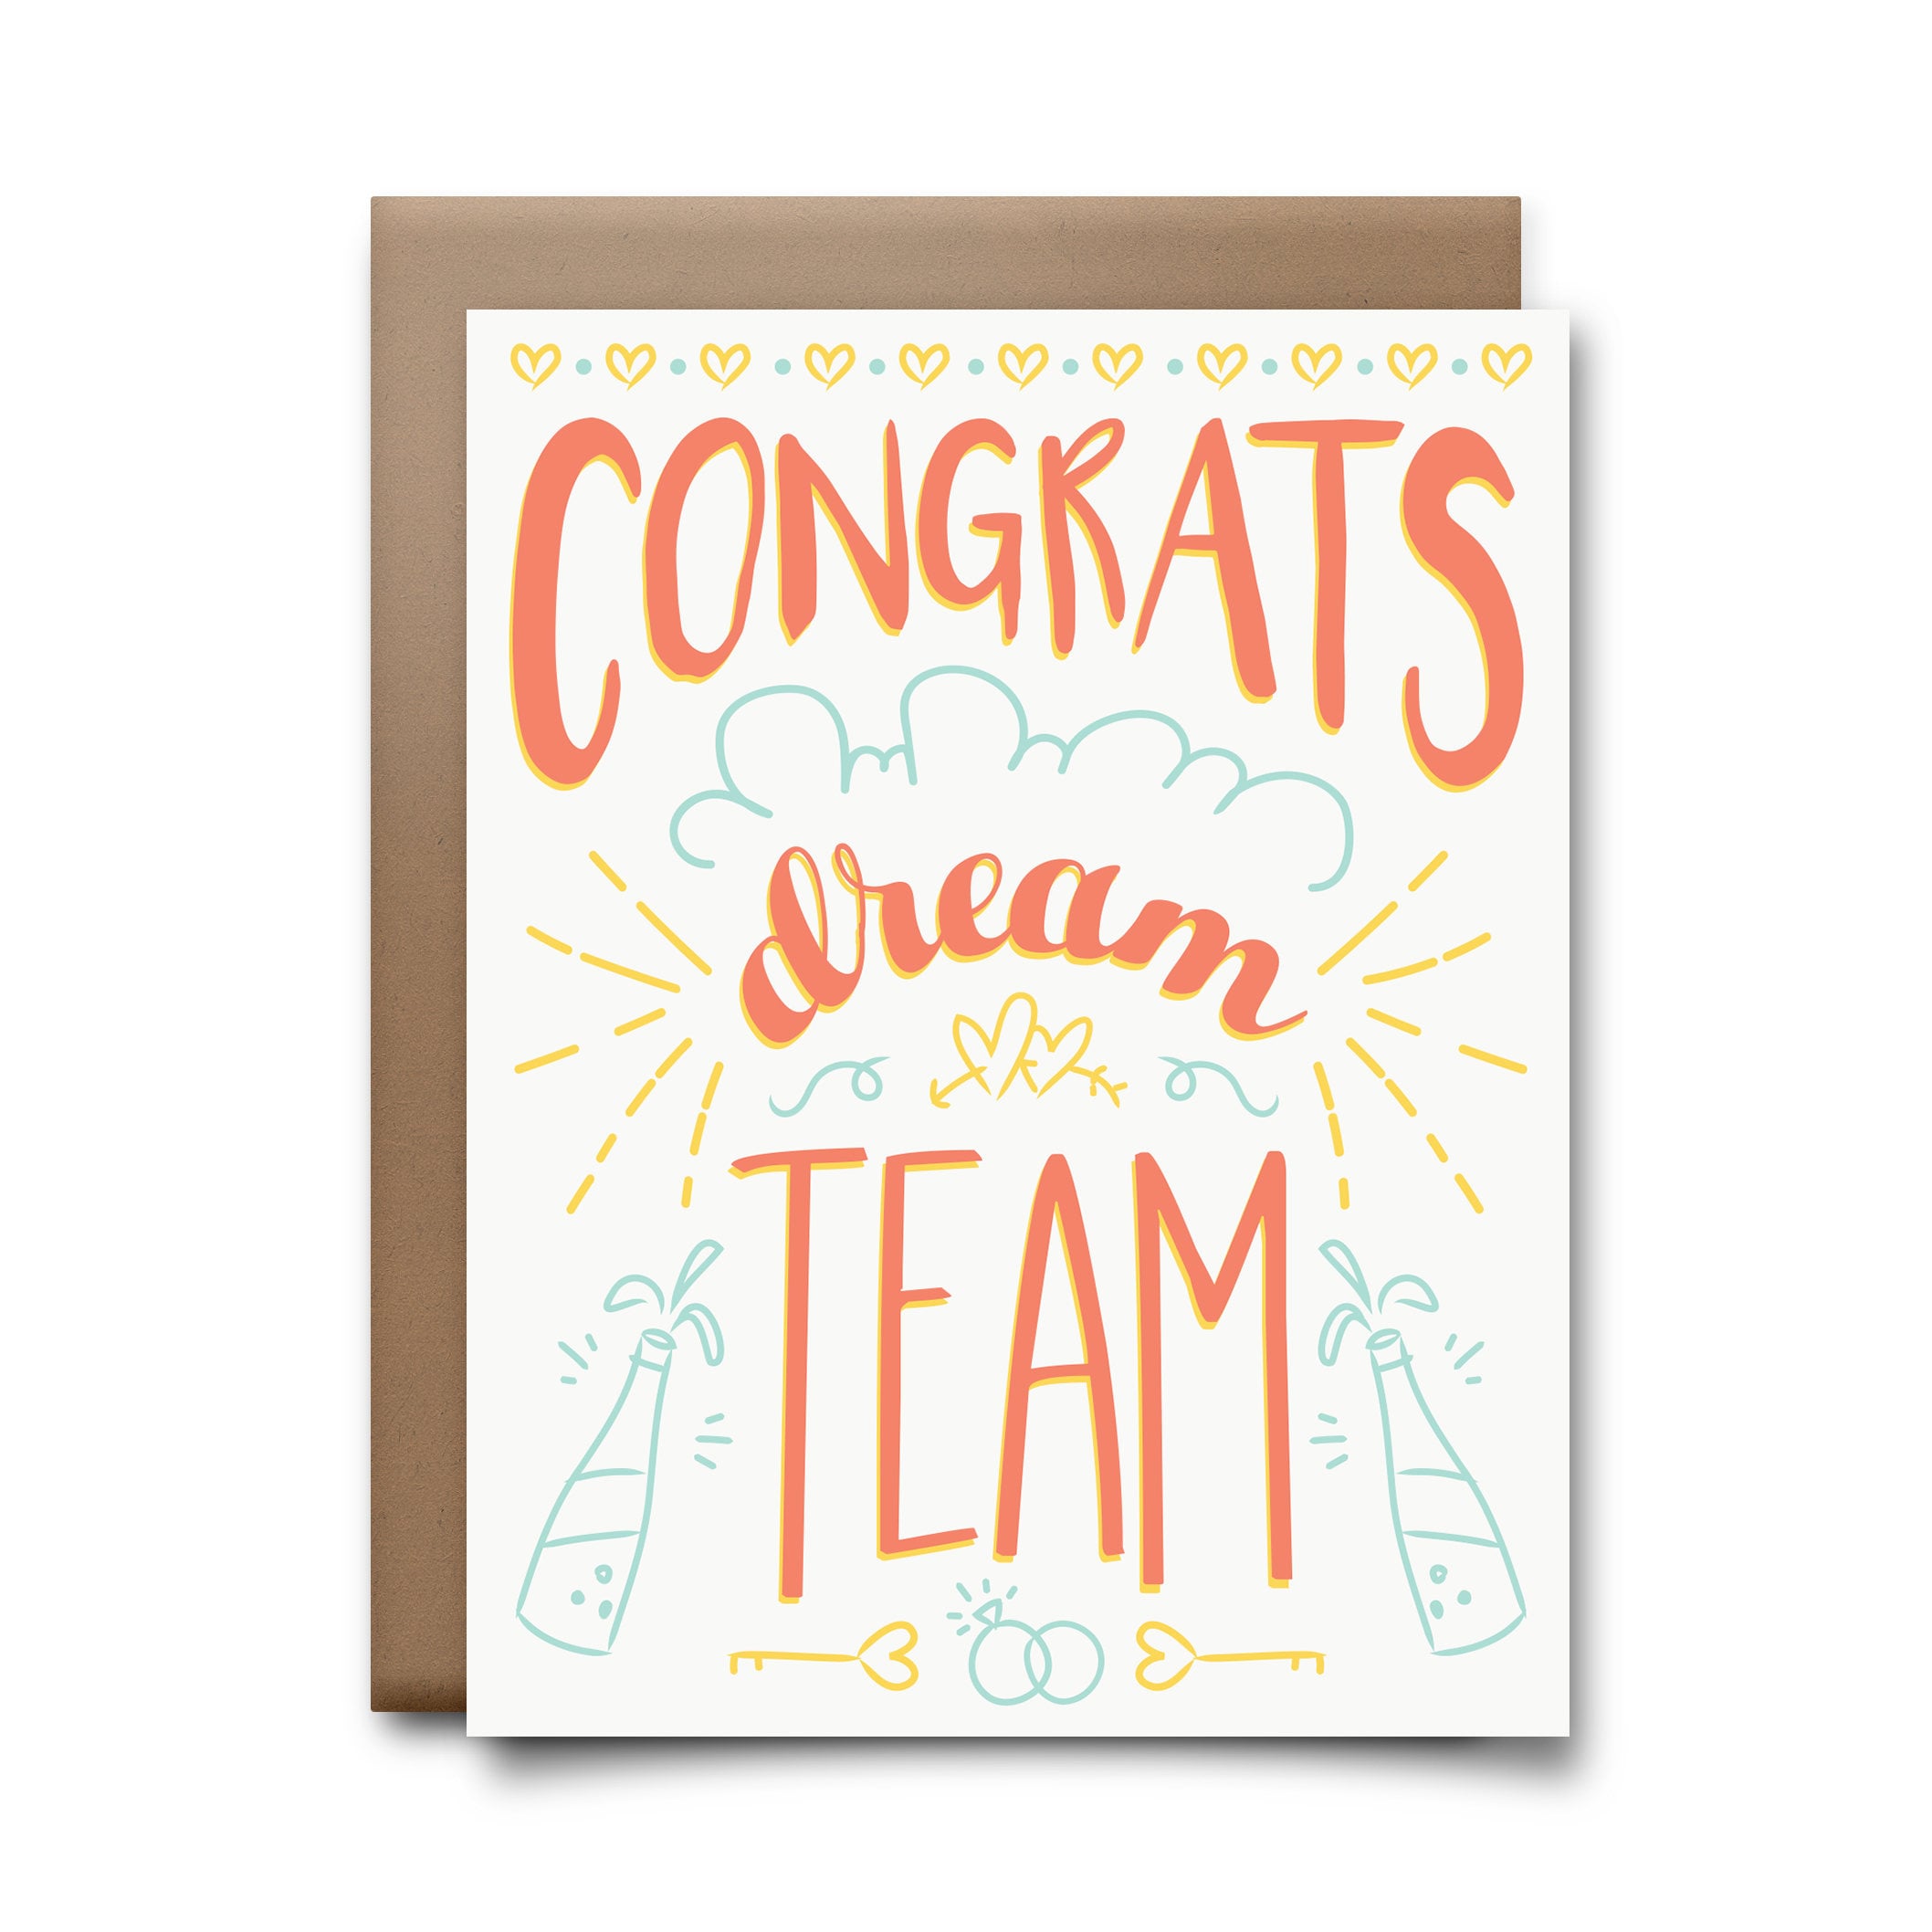 Dreamteam Dream team Greeting Card by Artexotica